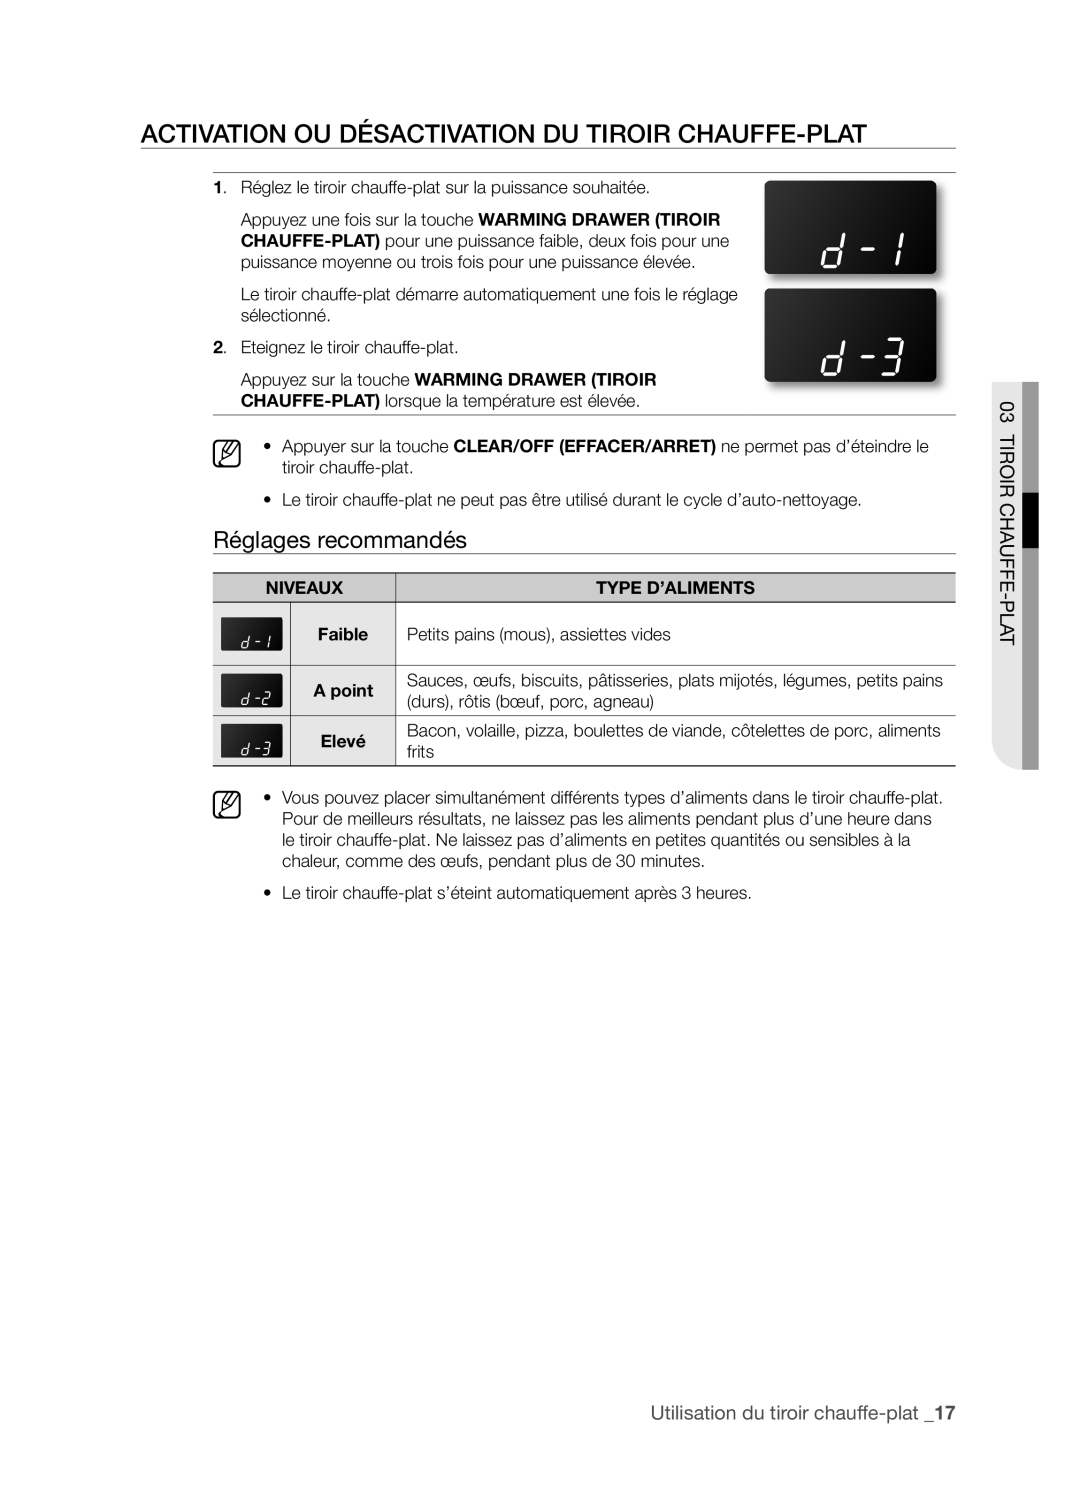 Samsung FTQ352IWX user manual Réglages recommandés, Tiroir Chauffe-Plat, Utilisation du tiroir chauffe-plat_1 